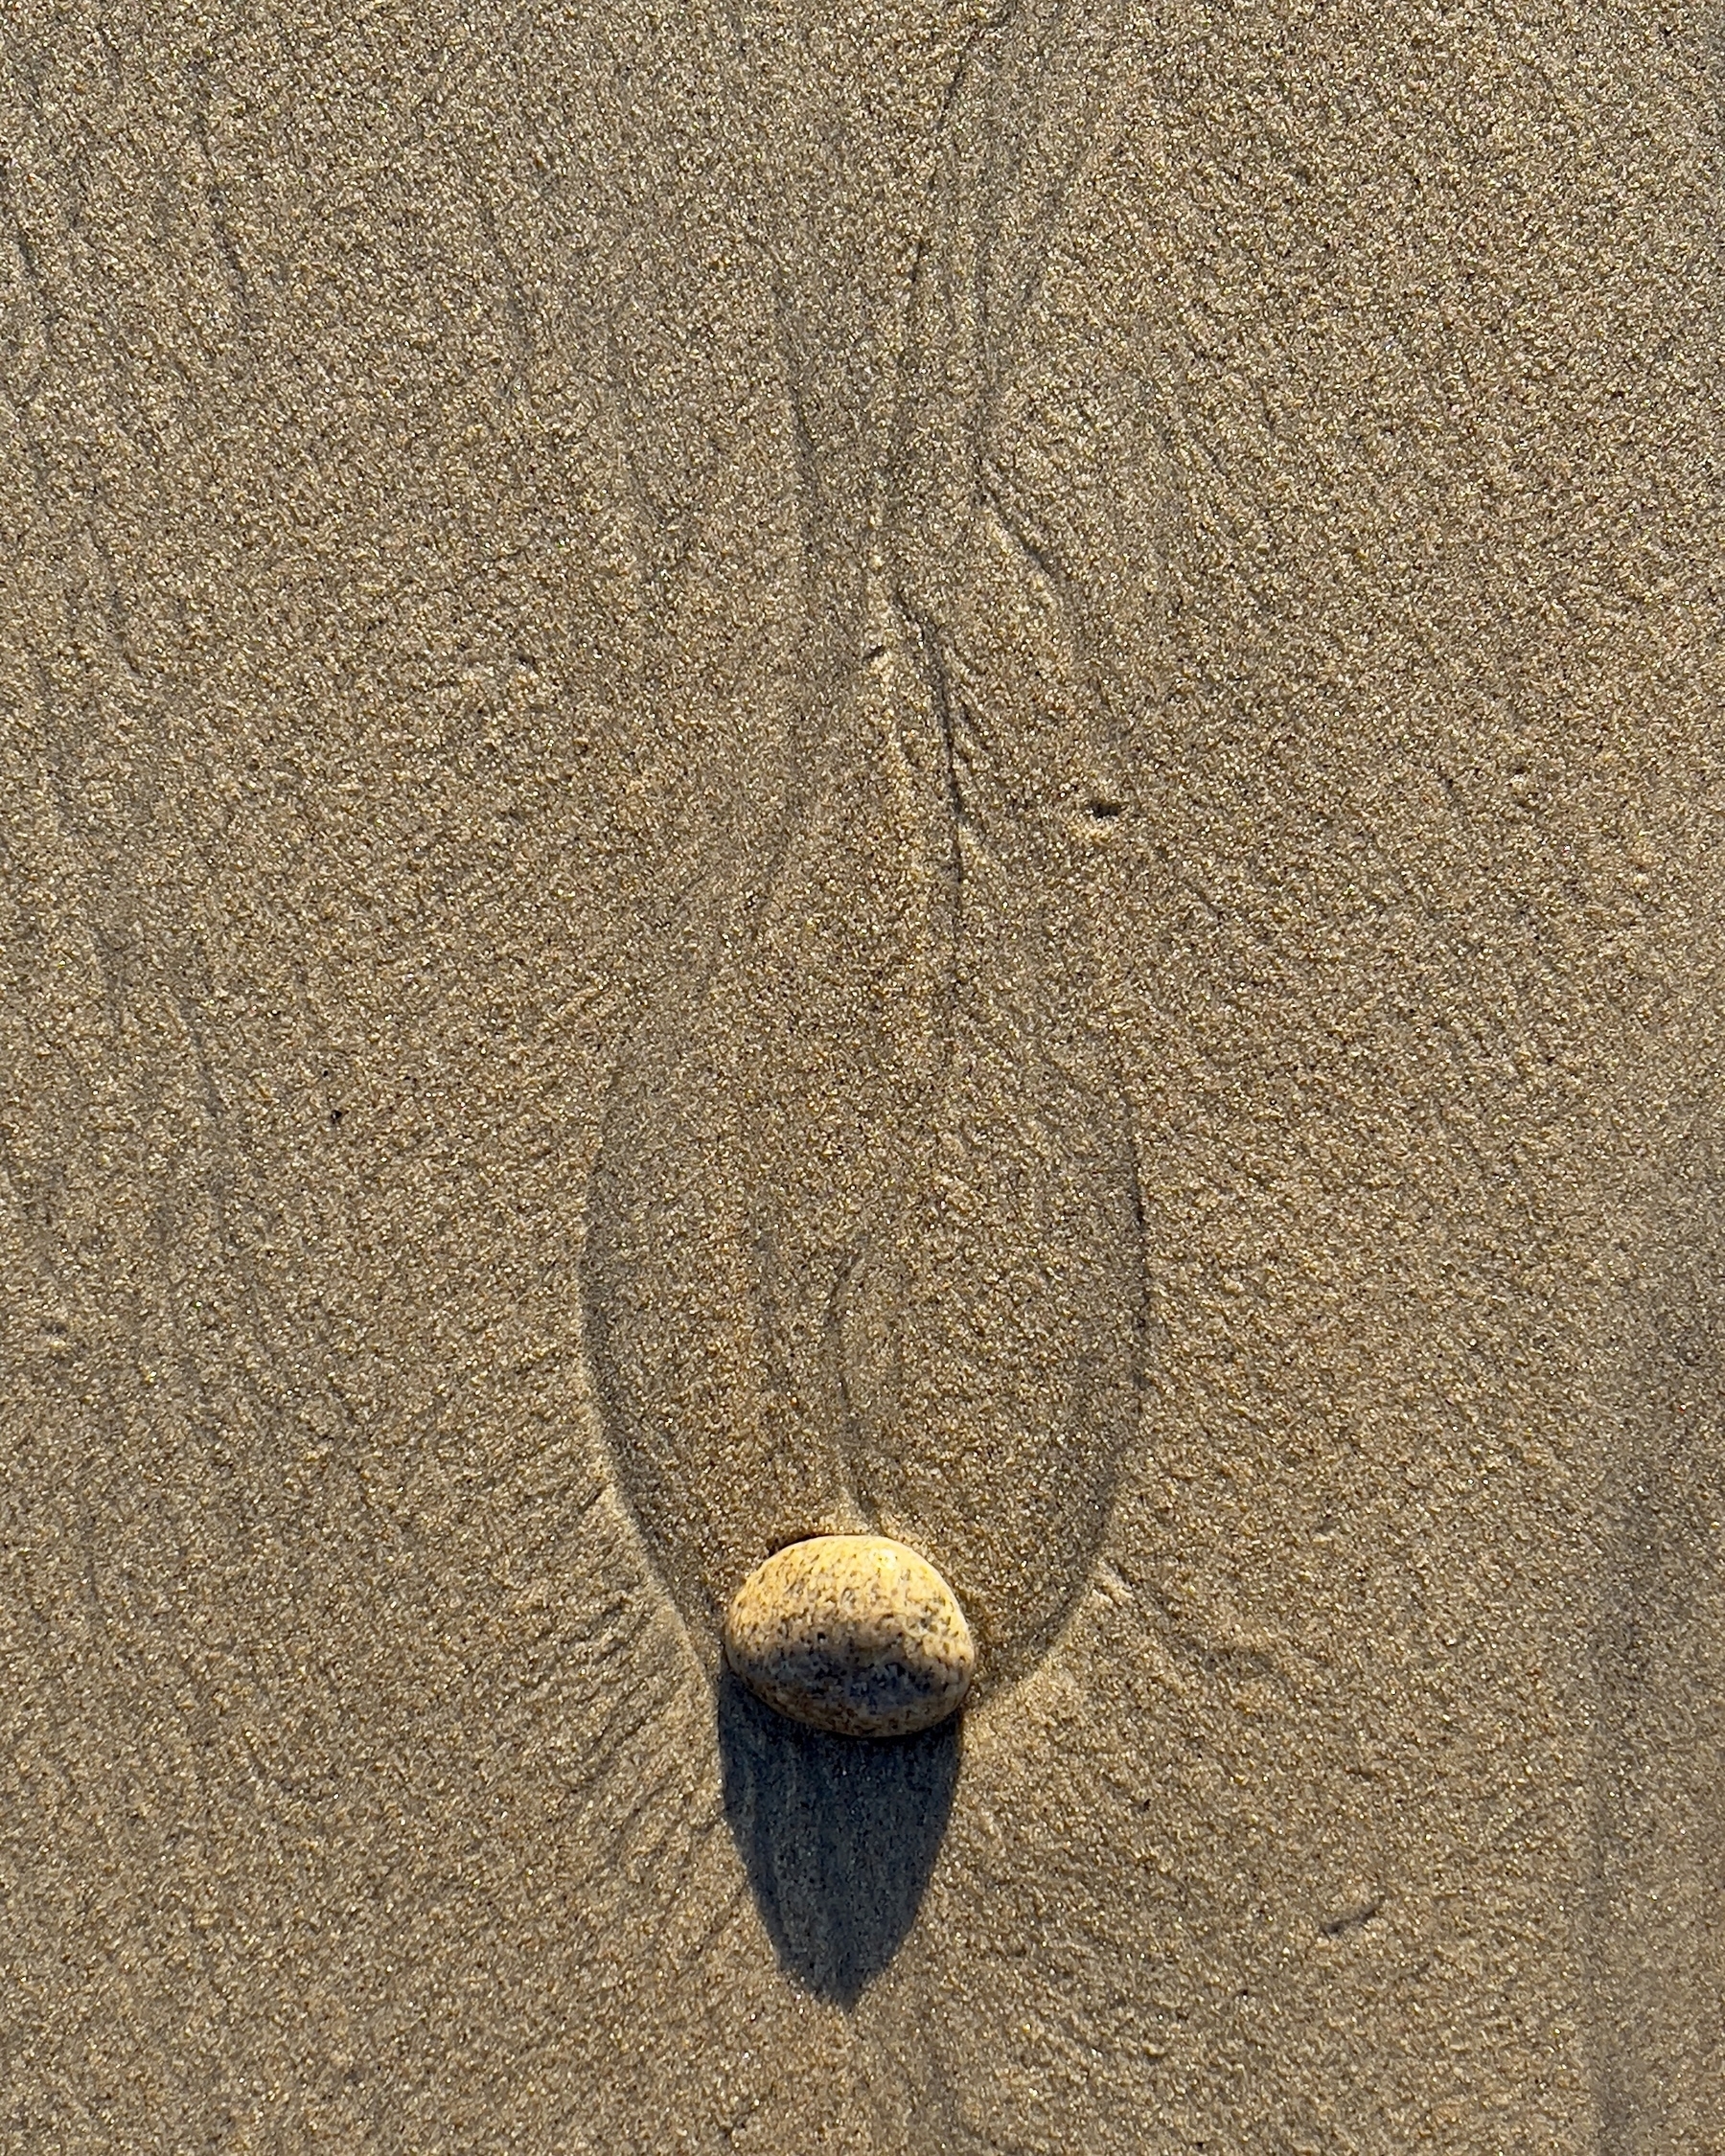 Stone, sand, erosion.